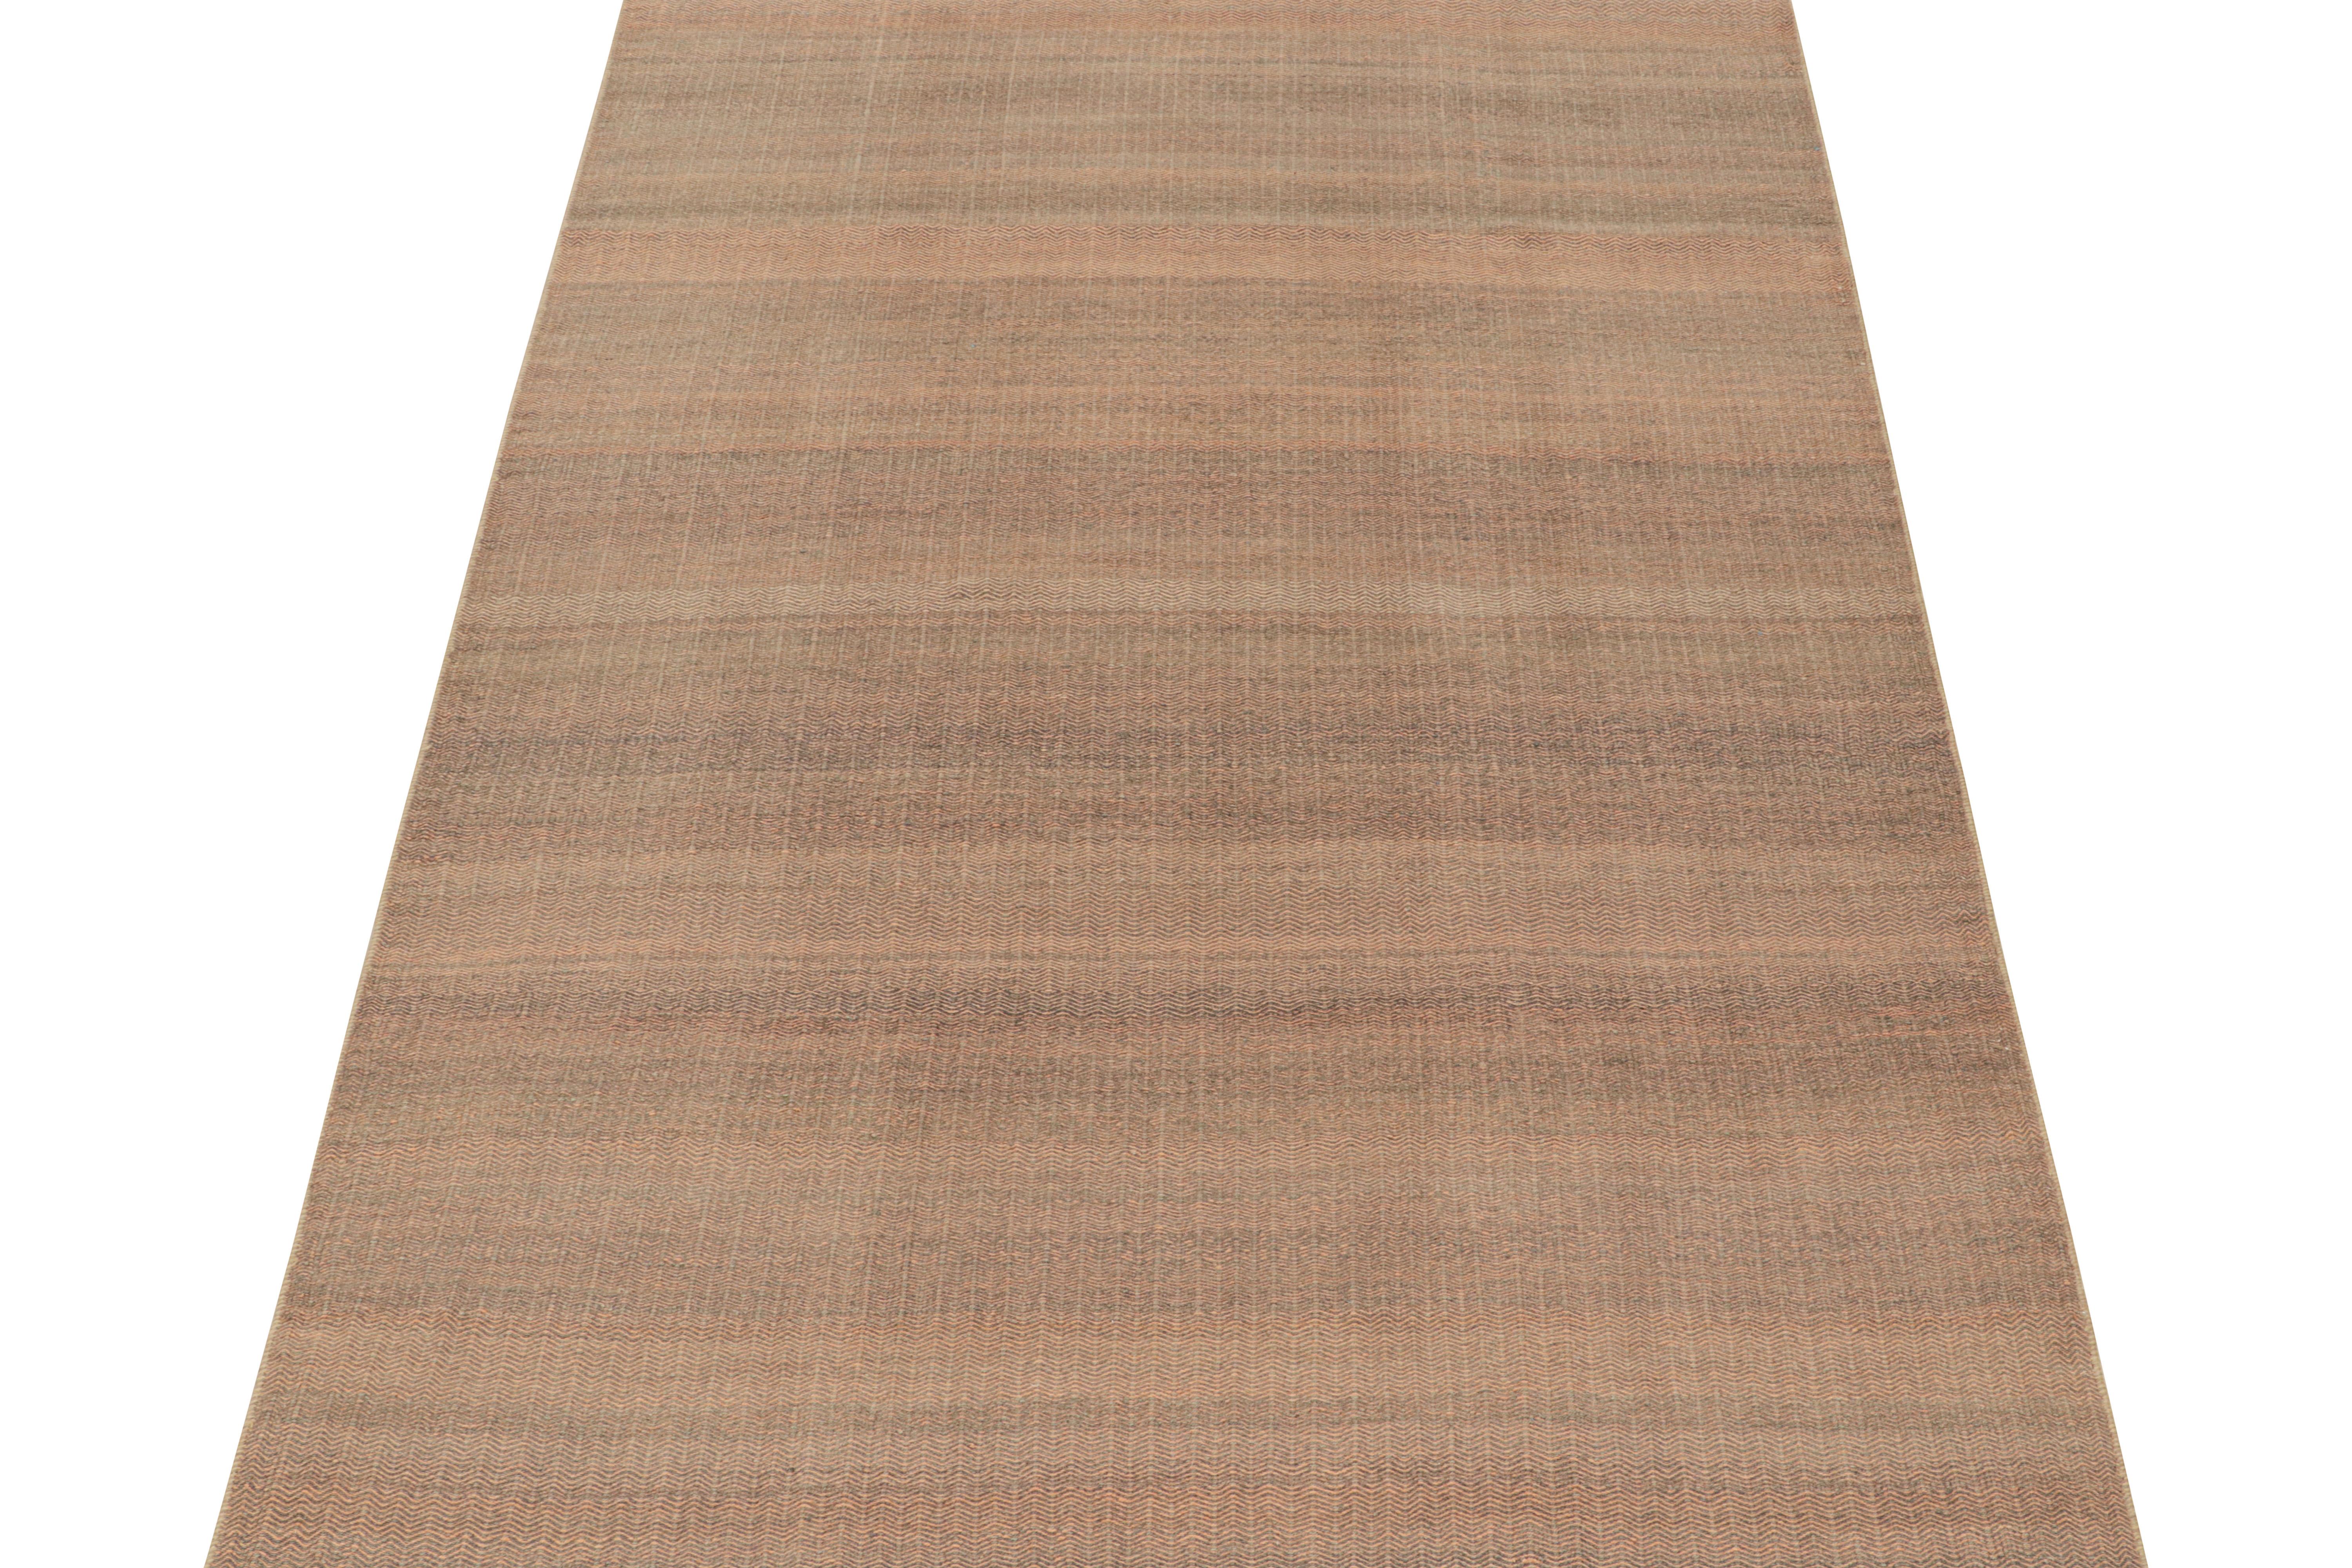 Tissé à la main en laine, ce kilim 7x10 est issu d'une nouvelle ligne de tissages plats contemporains de Rug & Kilim.

Sa construction utilise une technique de tissage à la palette qui fait jouer les couleurs complémentaires ensemble dans une fine